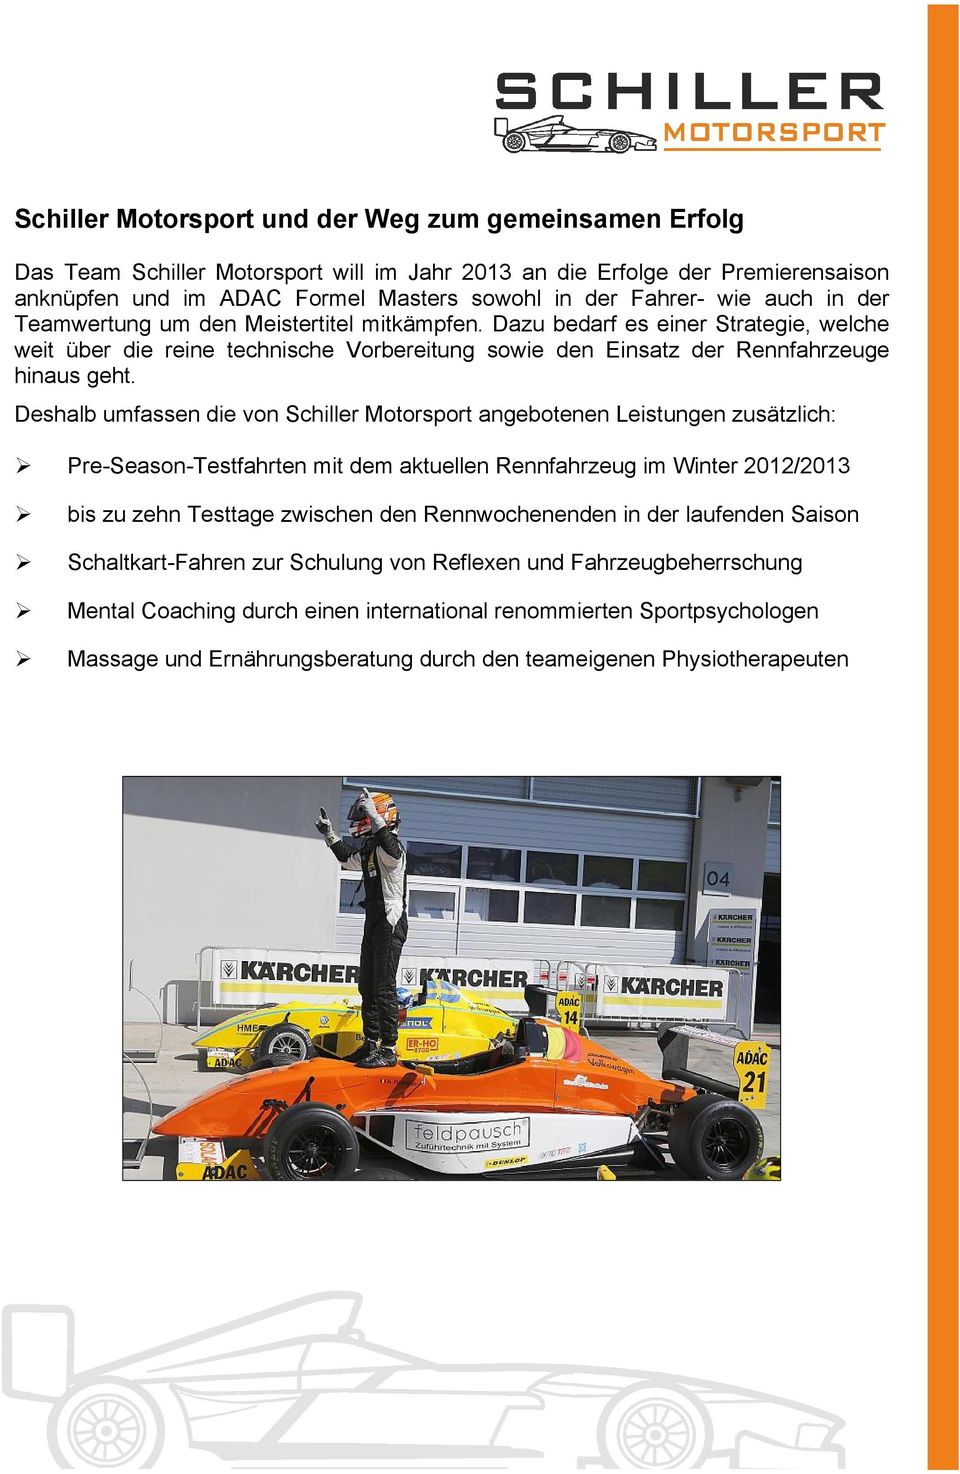 Deshalb umfassen die von Schiller Motorsport angebotenen Leistungen zusätzlich: Pre-Season-Testfahrten mit dem aktuellen Rennfahrzeug im Winter 2012/2013 bis zu zehn Testtage zwischen den